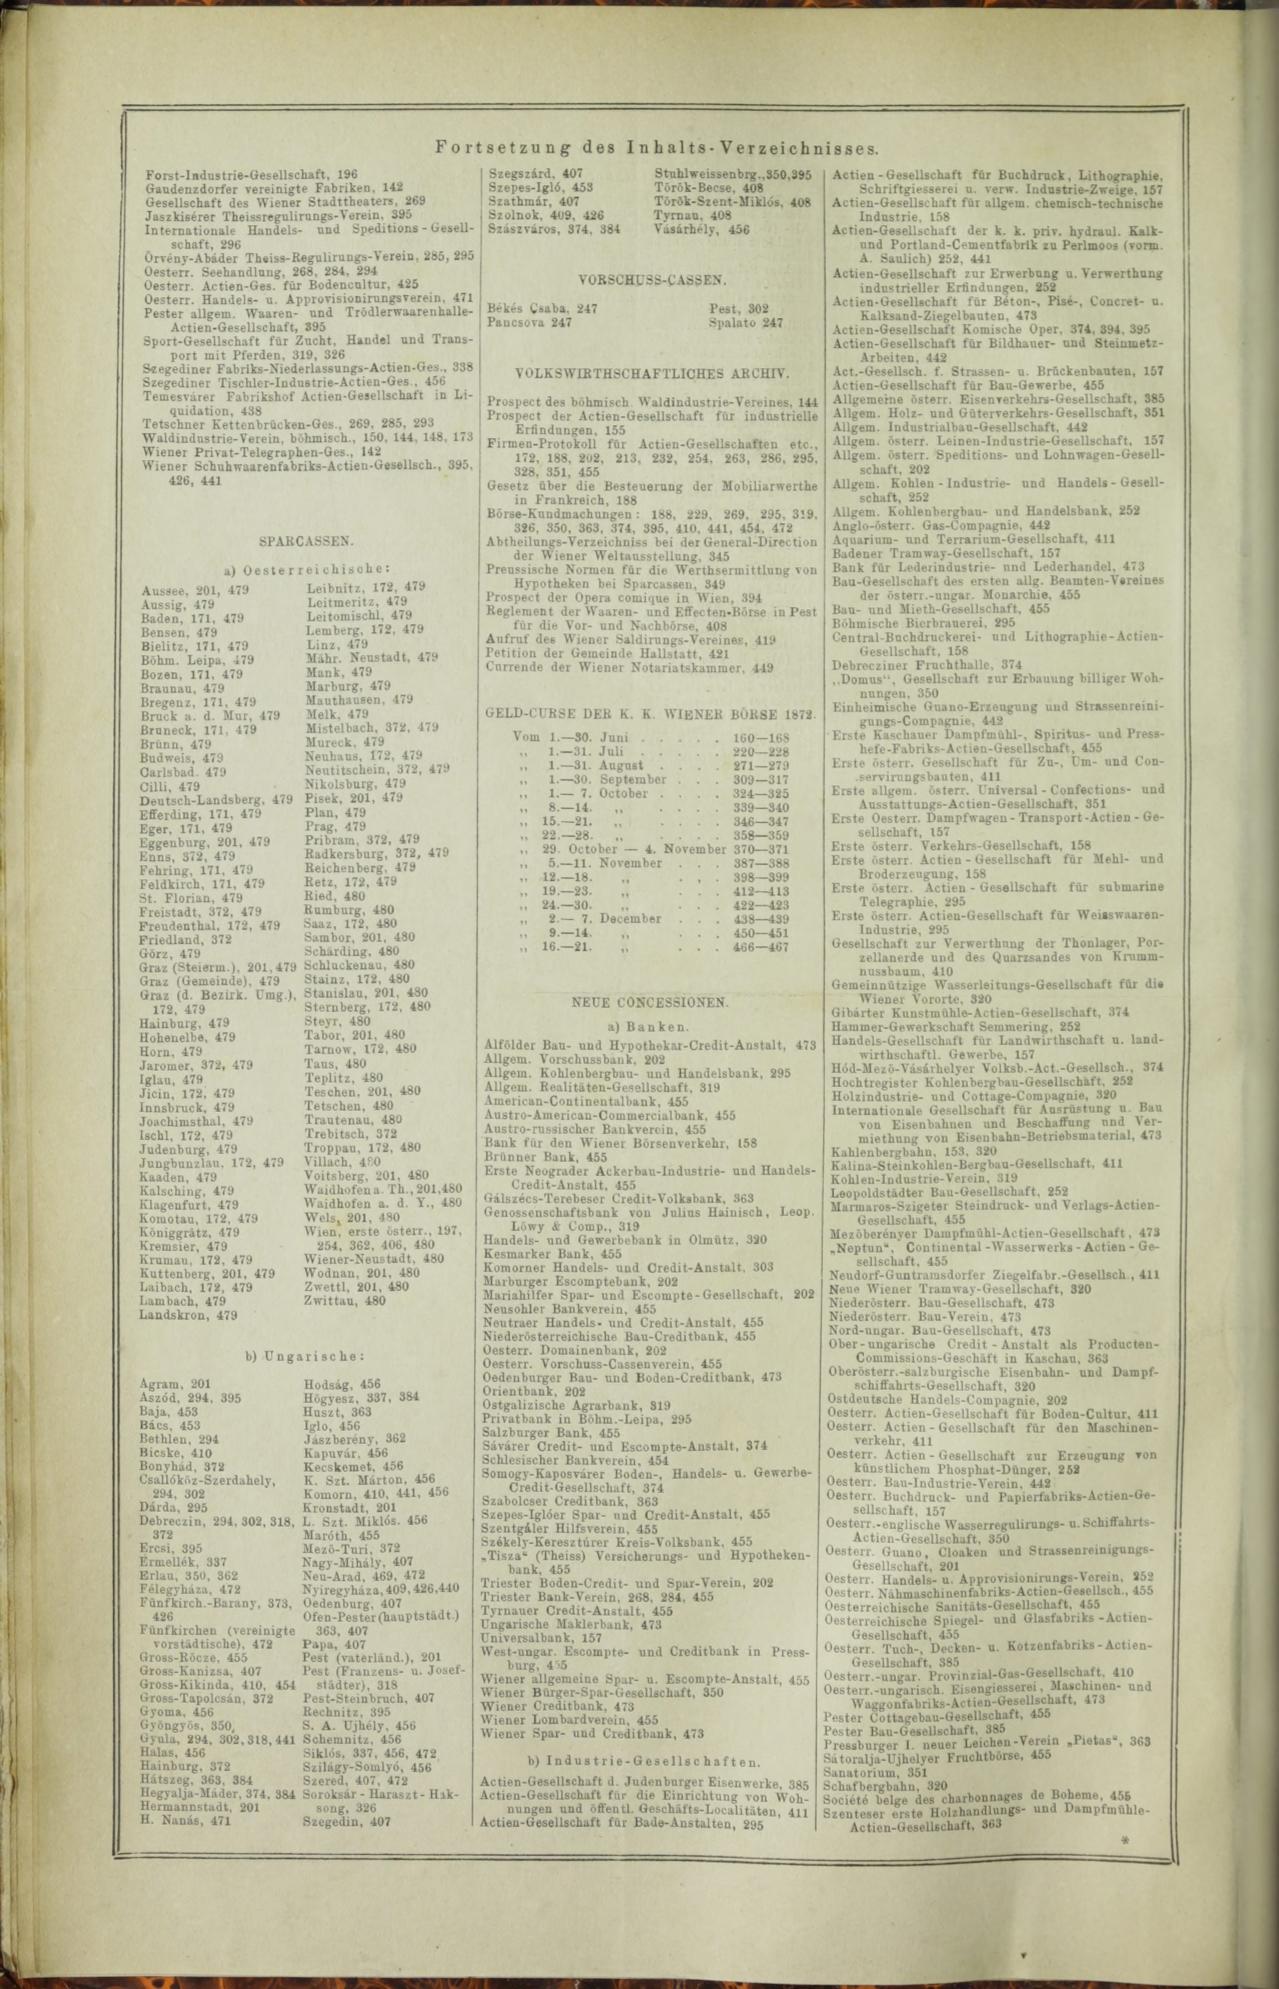 Der Tresor 16.10.1872 - Page 13